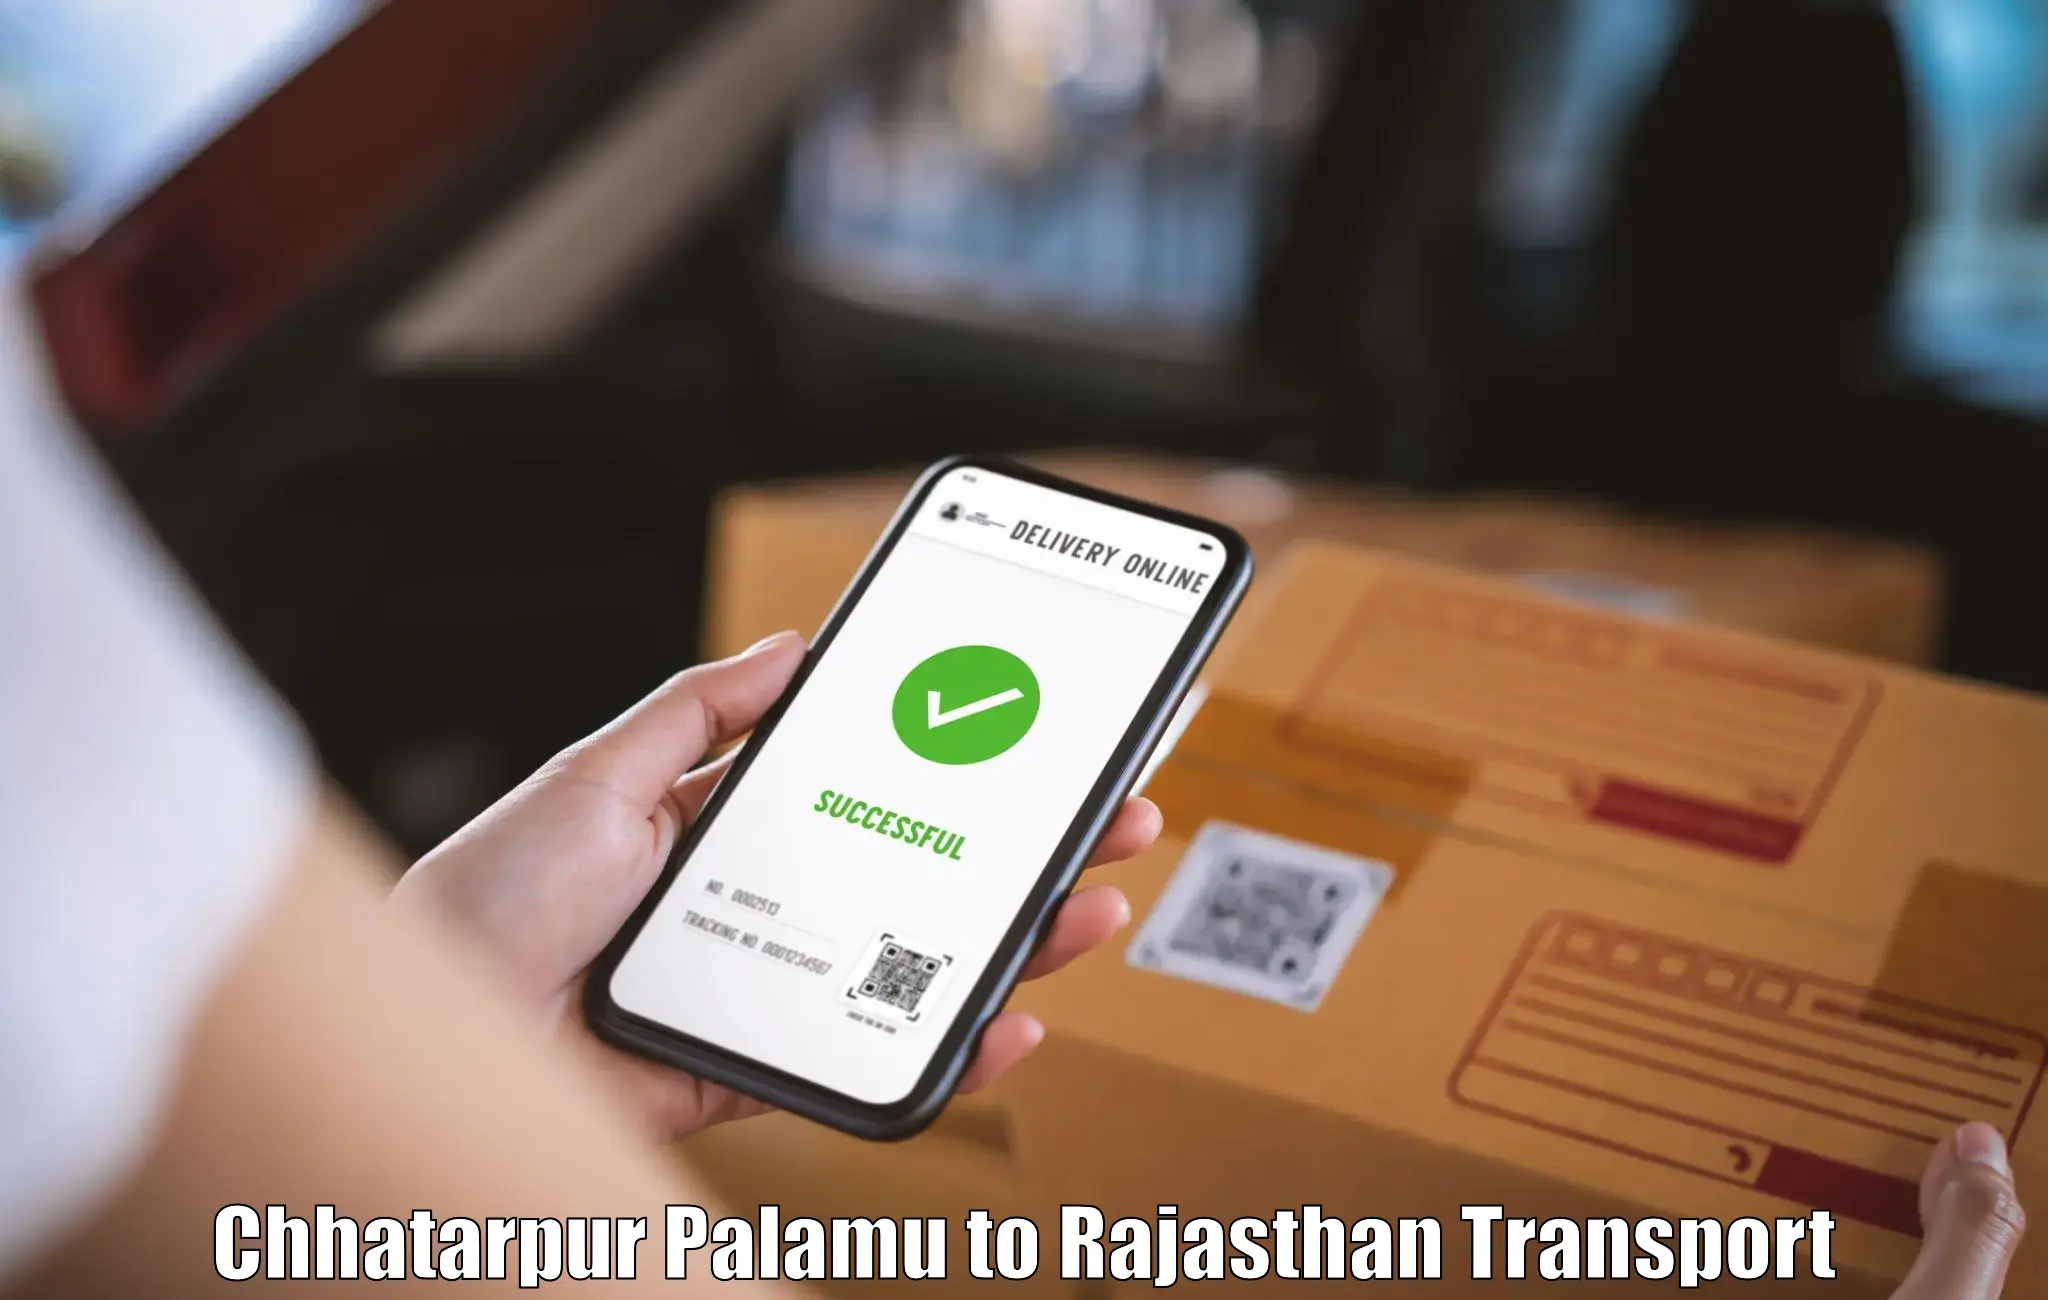 Delivery service Chhatarpur Palamu to Mahwa